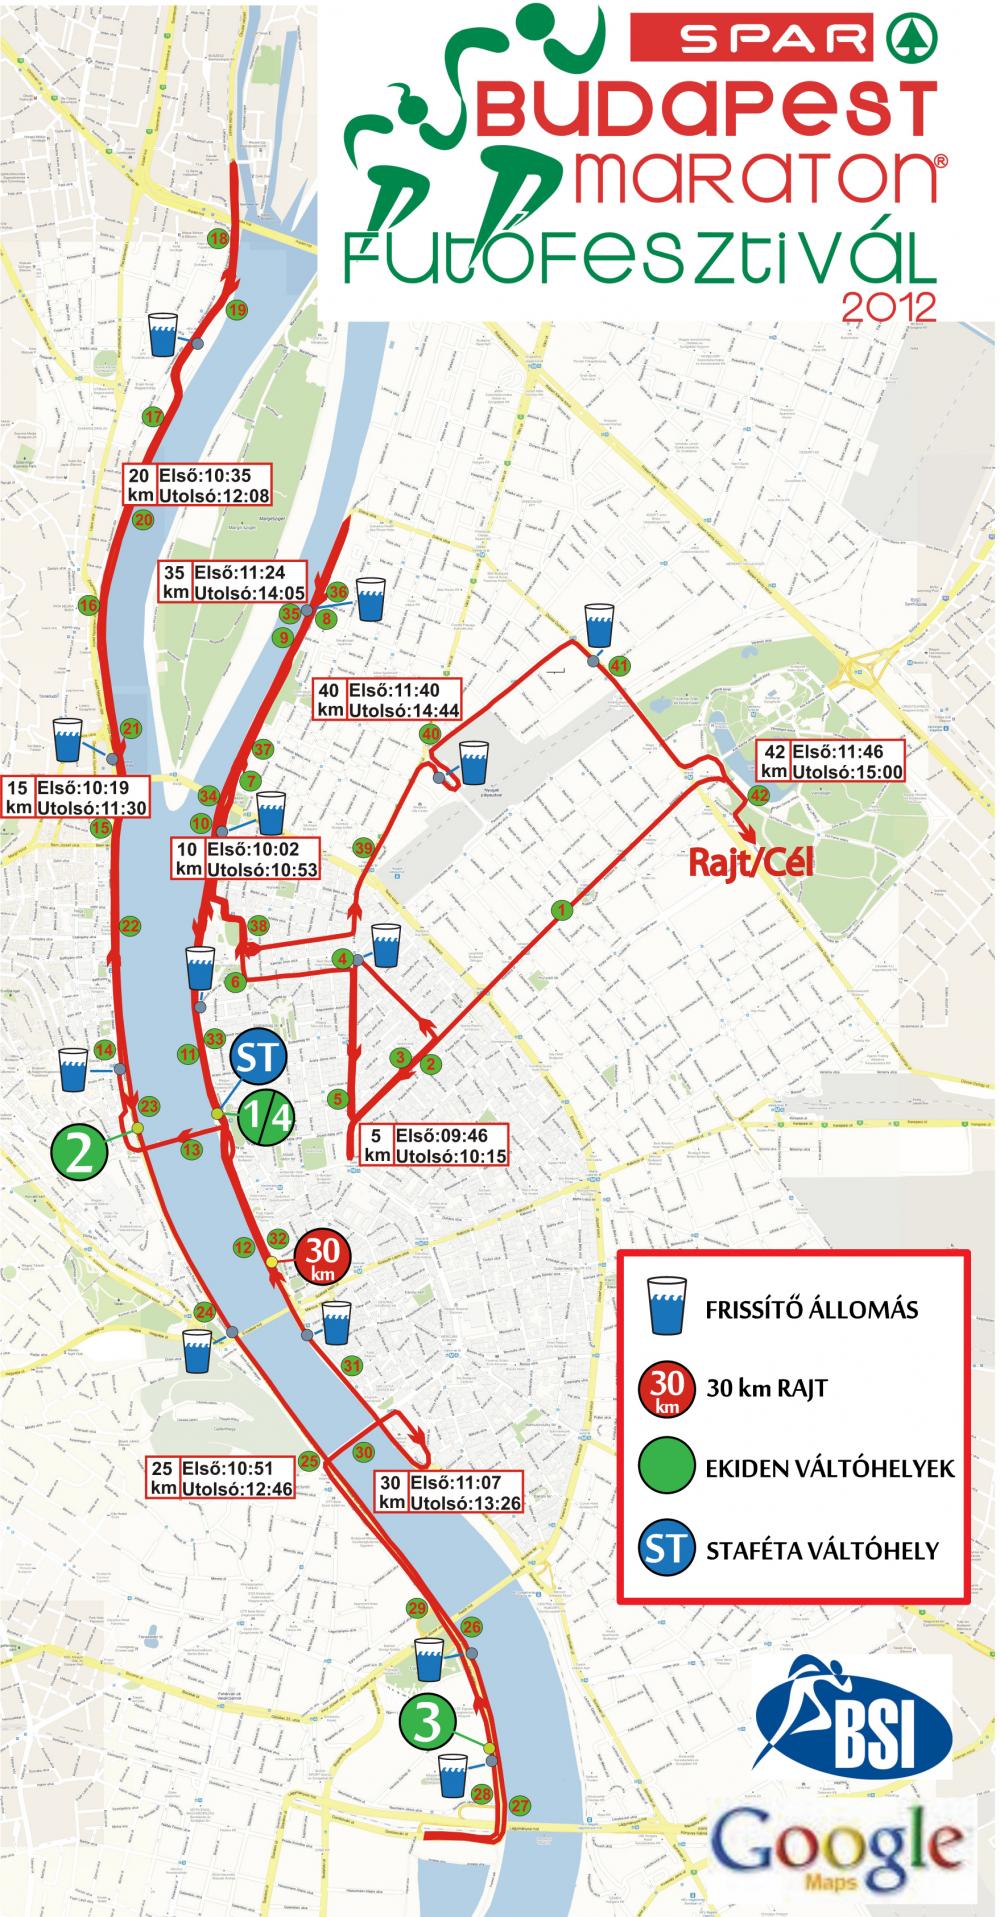 budapest térkép útvonal 27. Spar Budapest Maraton   térkép   Futanet.hu budapest térkép útvonal